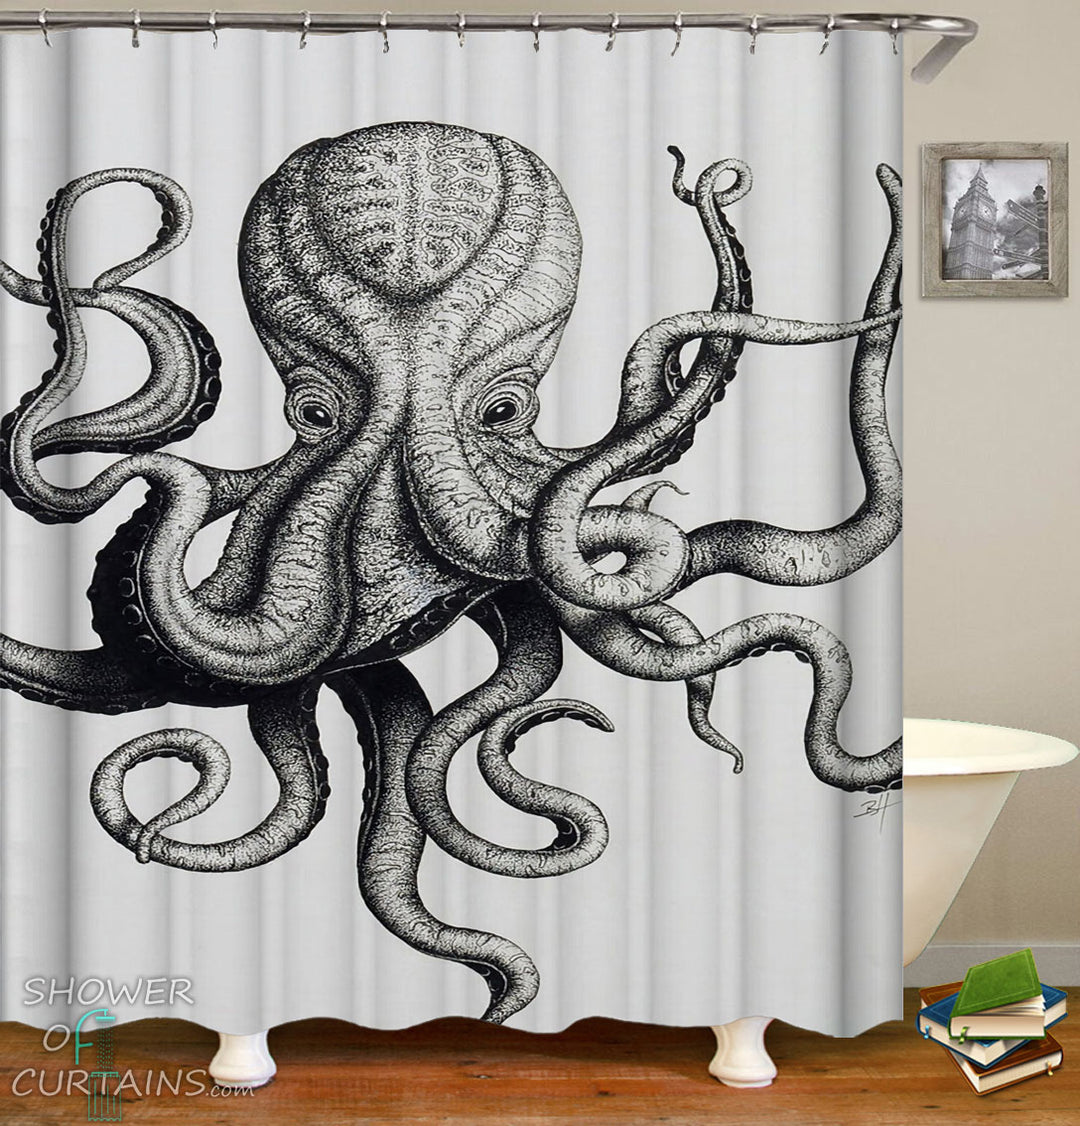 Frightening Octopus Shower Curtain - Octopus Drawing Bathroom Decor